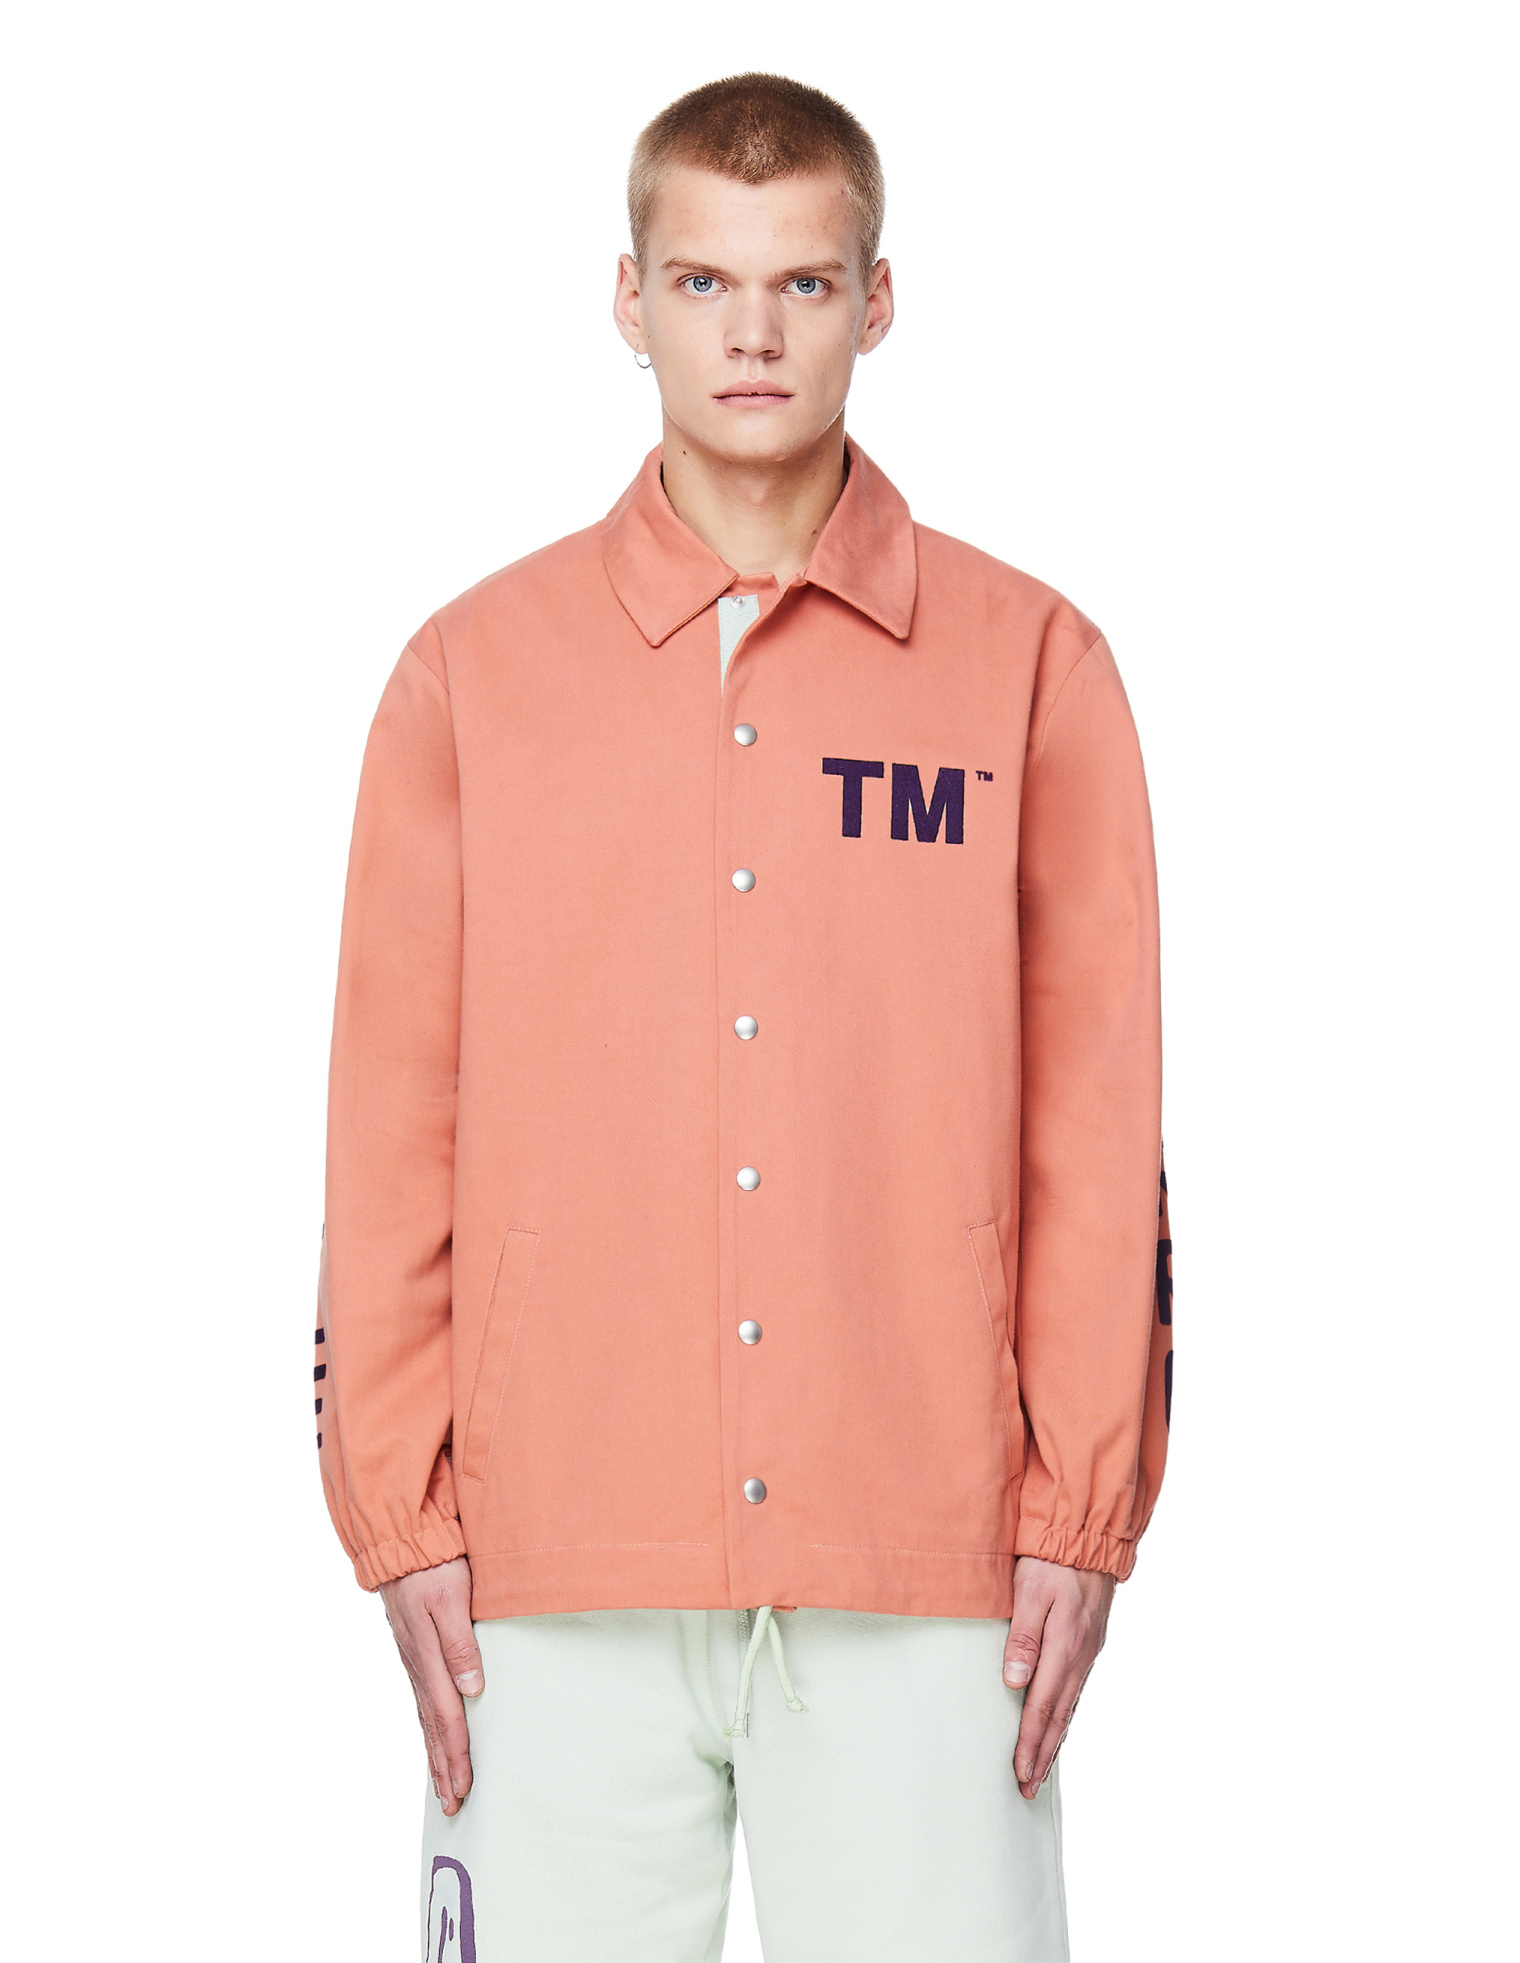 Pigalle Pink Cotton TM Coach Jacket